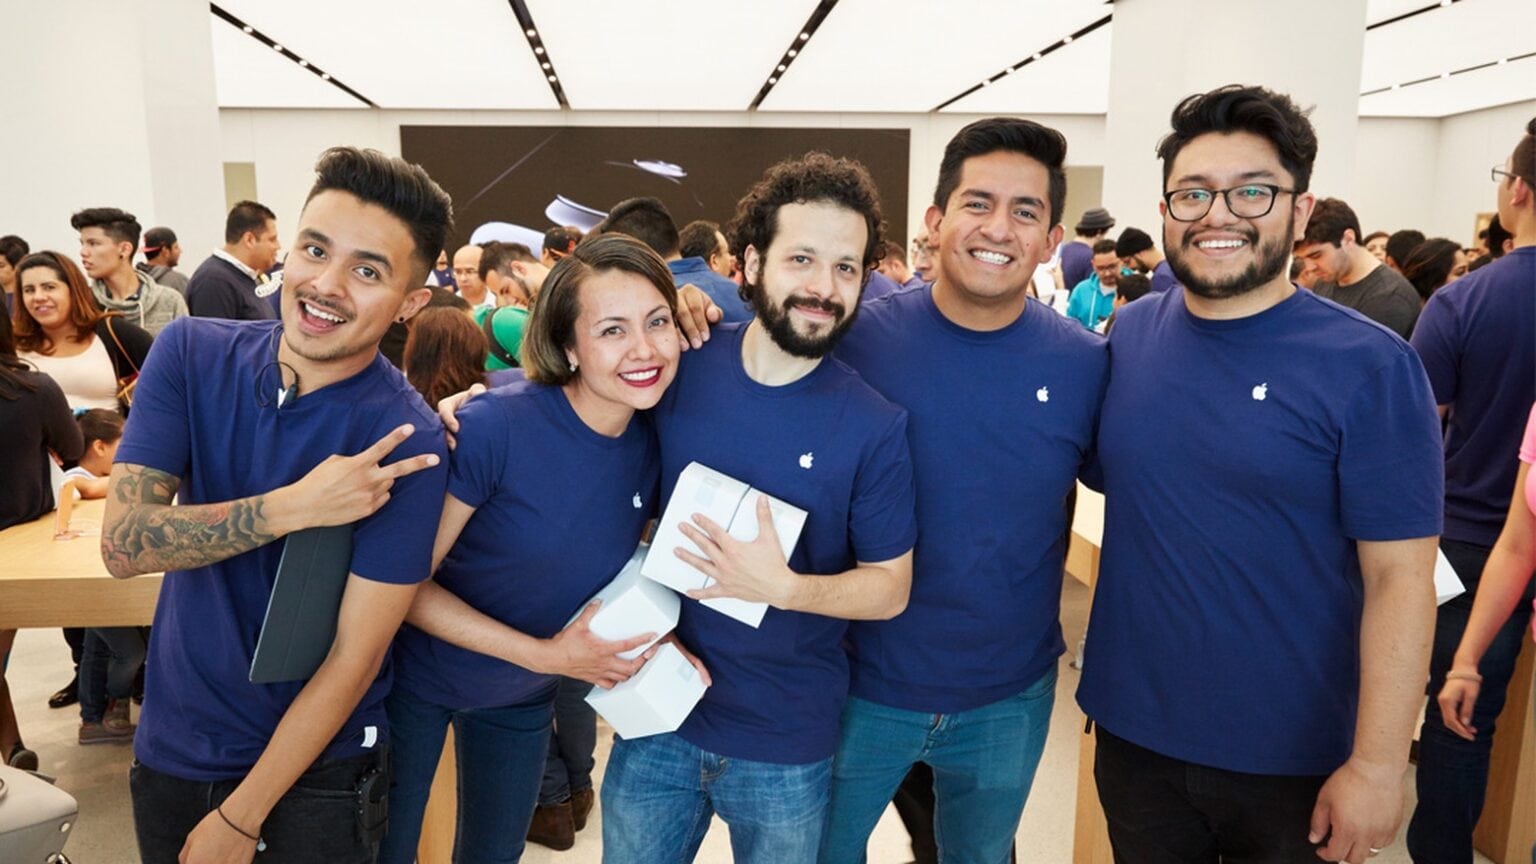 Union! Apple retail employees move to unionize